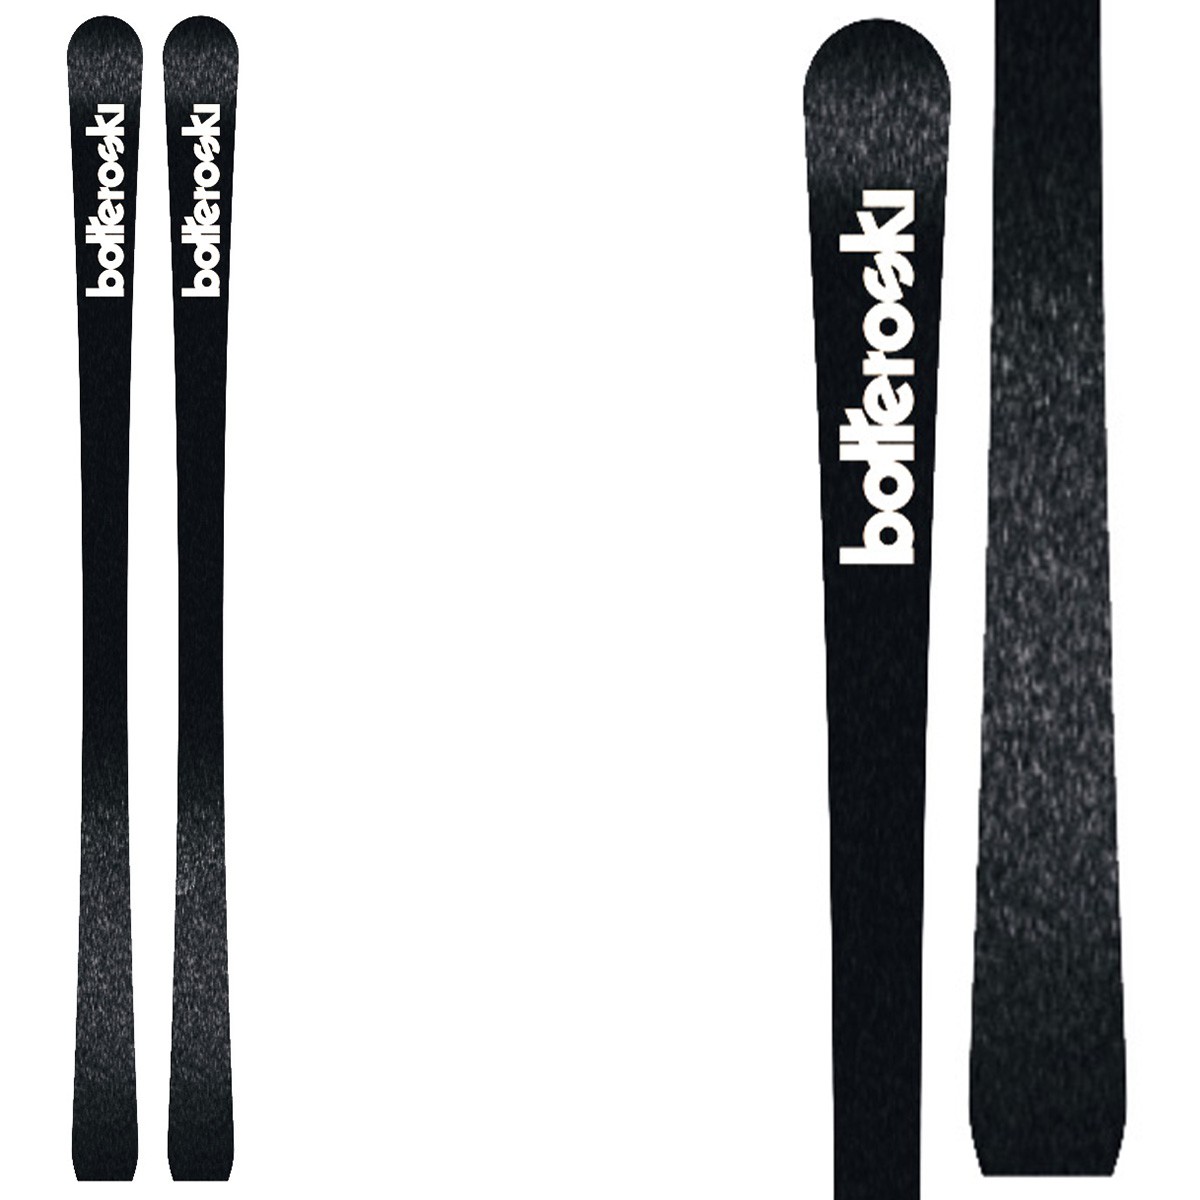  Sci Bottero Ski Elite Promo con attacchi V412 con piastra WC Air Soft Aso 10 (Colore: nero-bianco, Taglia: 174) 